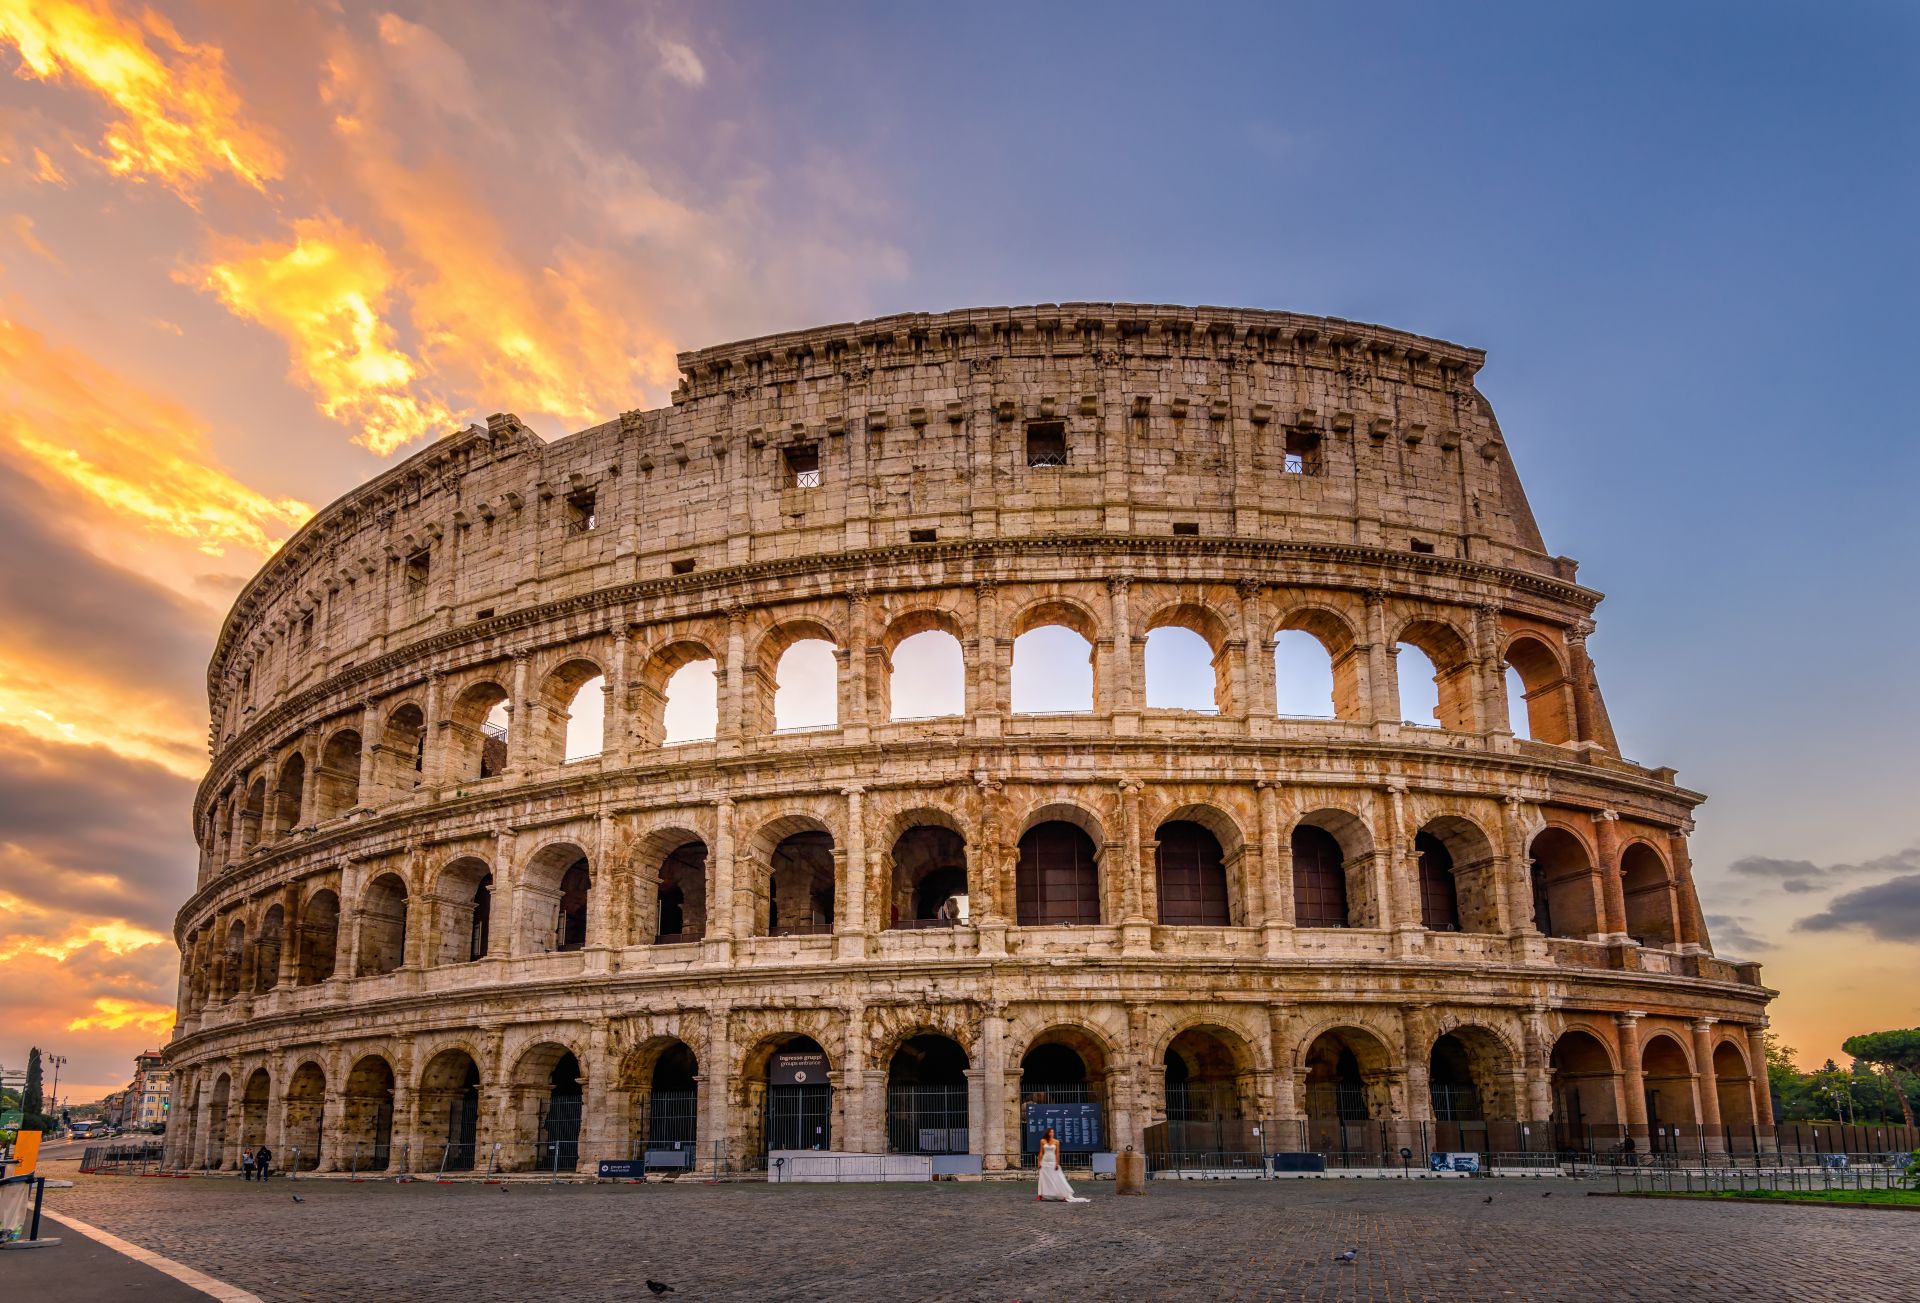 Vue du Colisée de Rome et du soleil matinal, Italie, Europe.